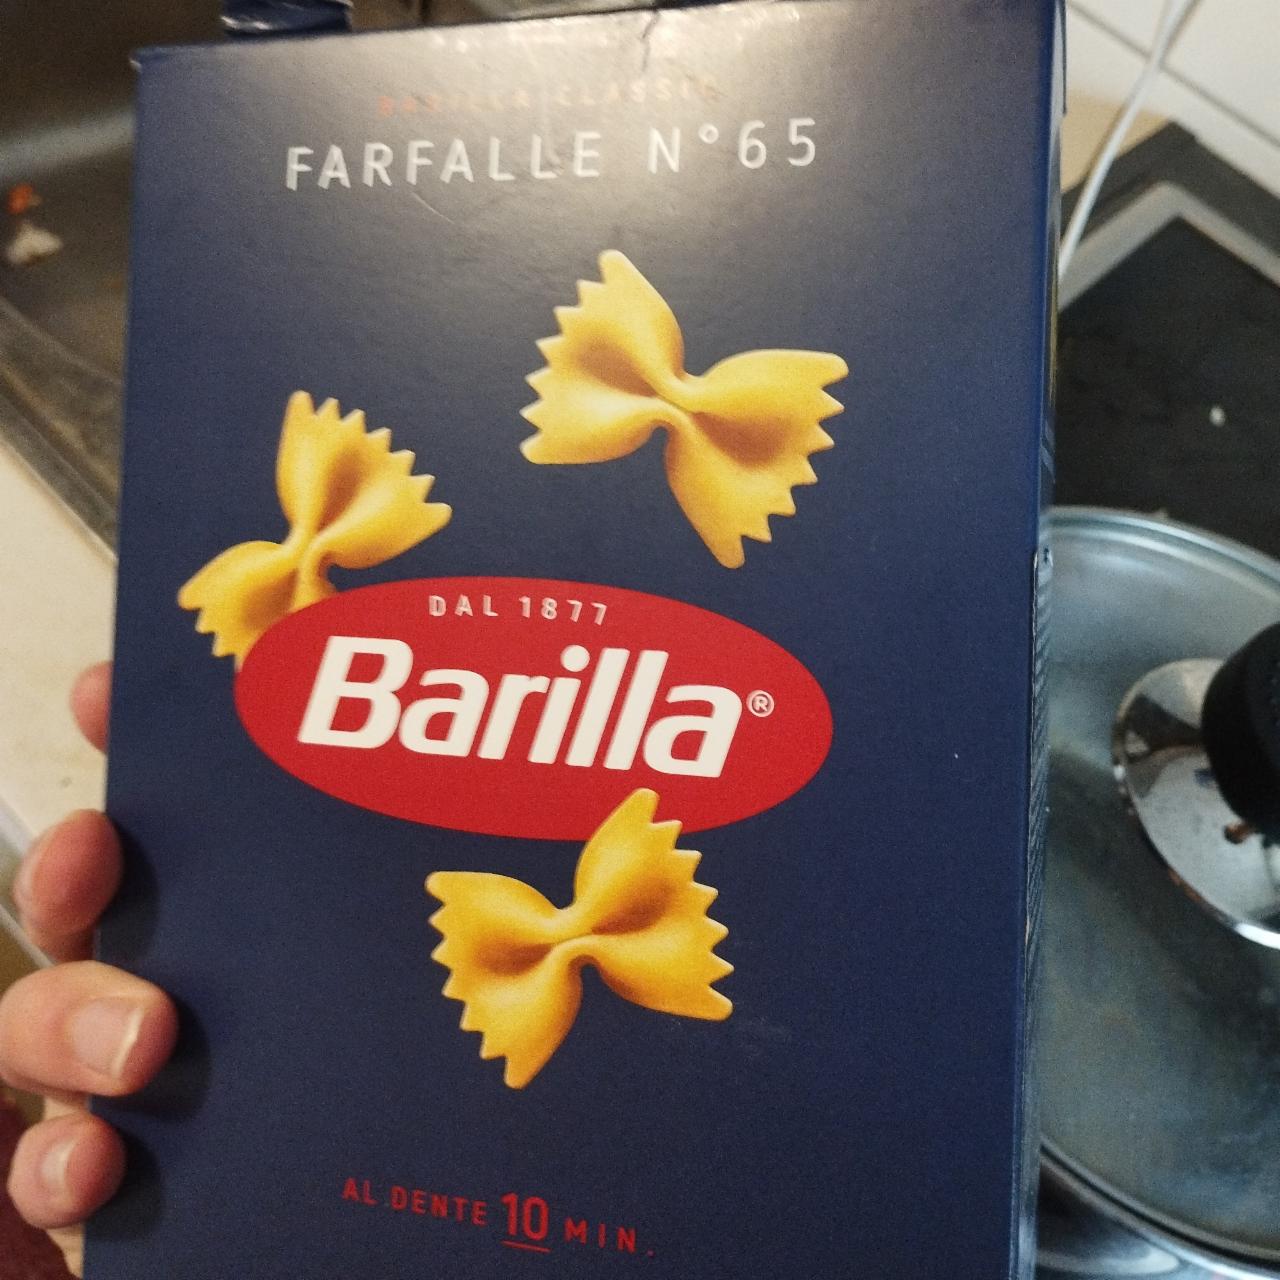 Fotografie - Pasta Farfalle №65 Barilla